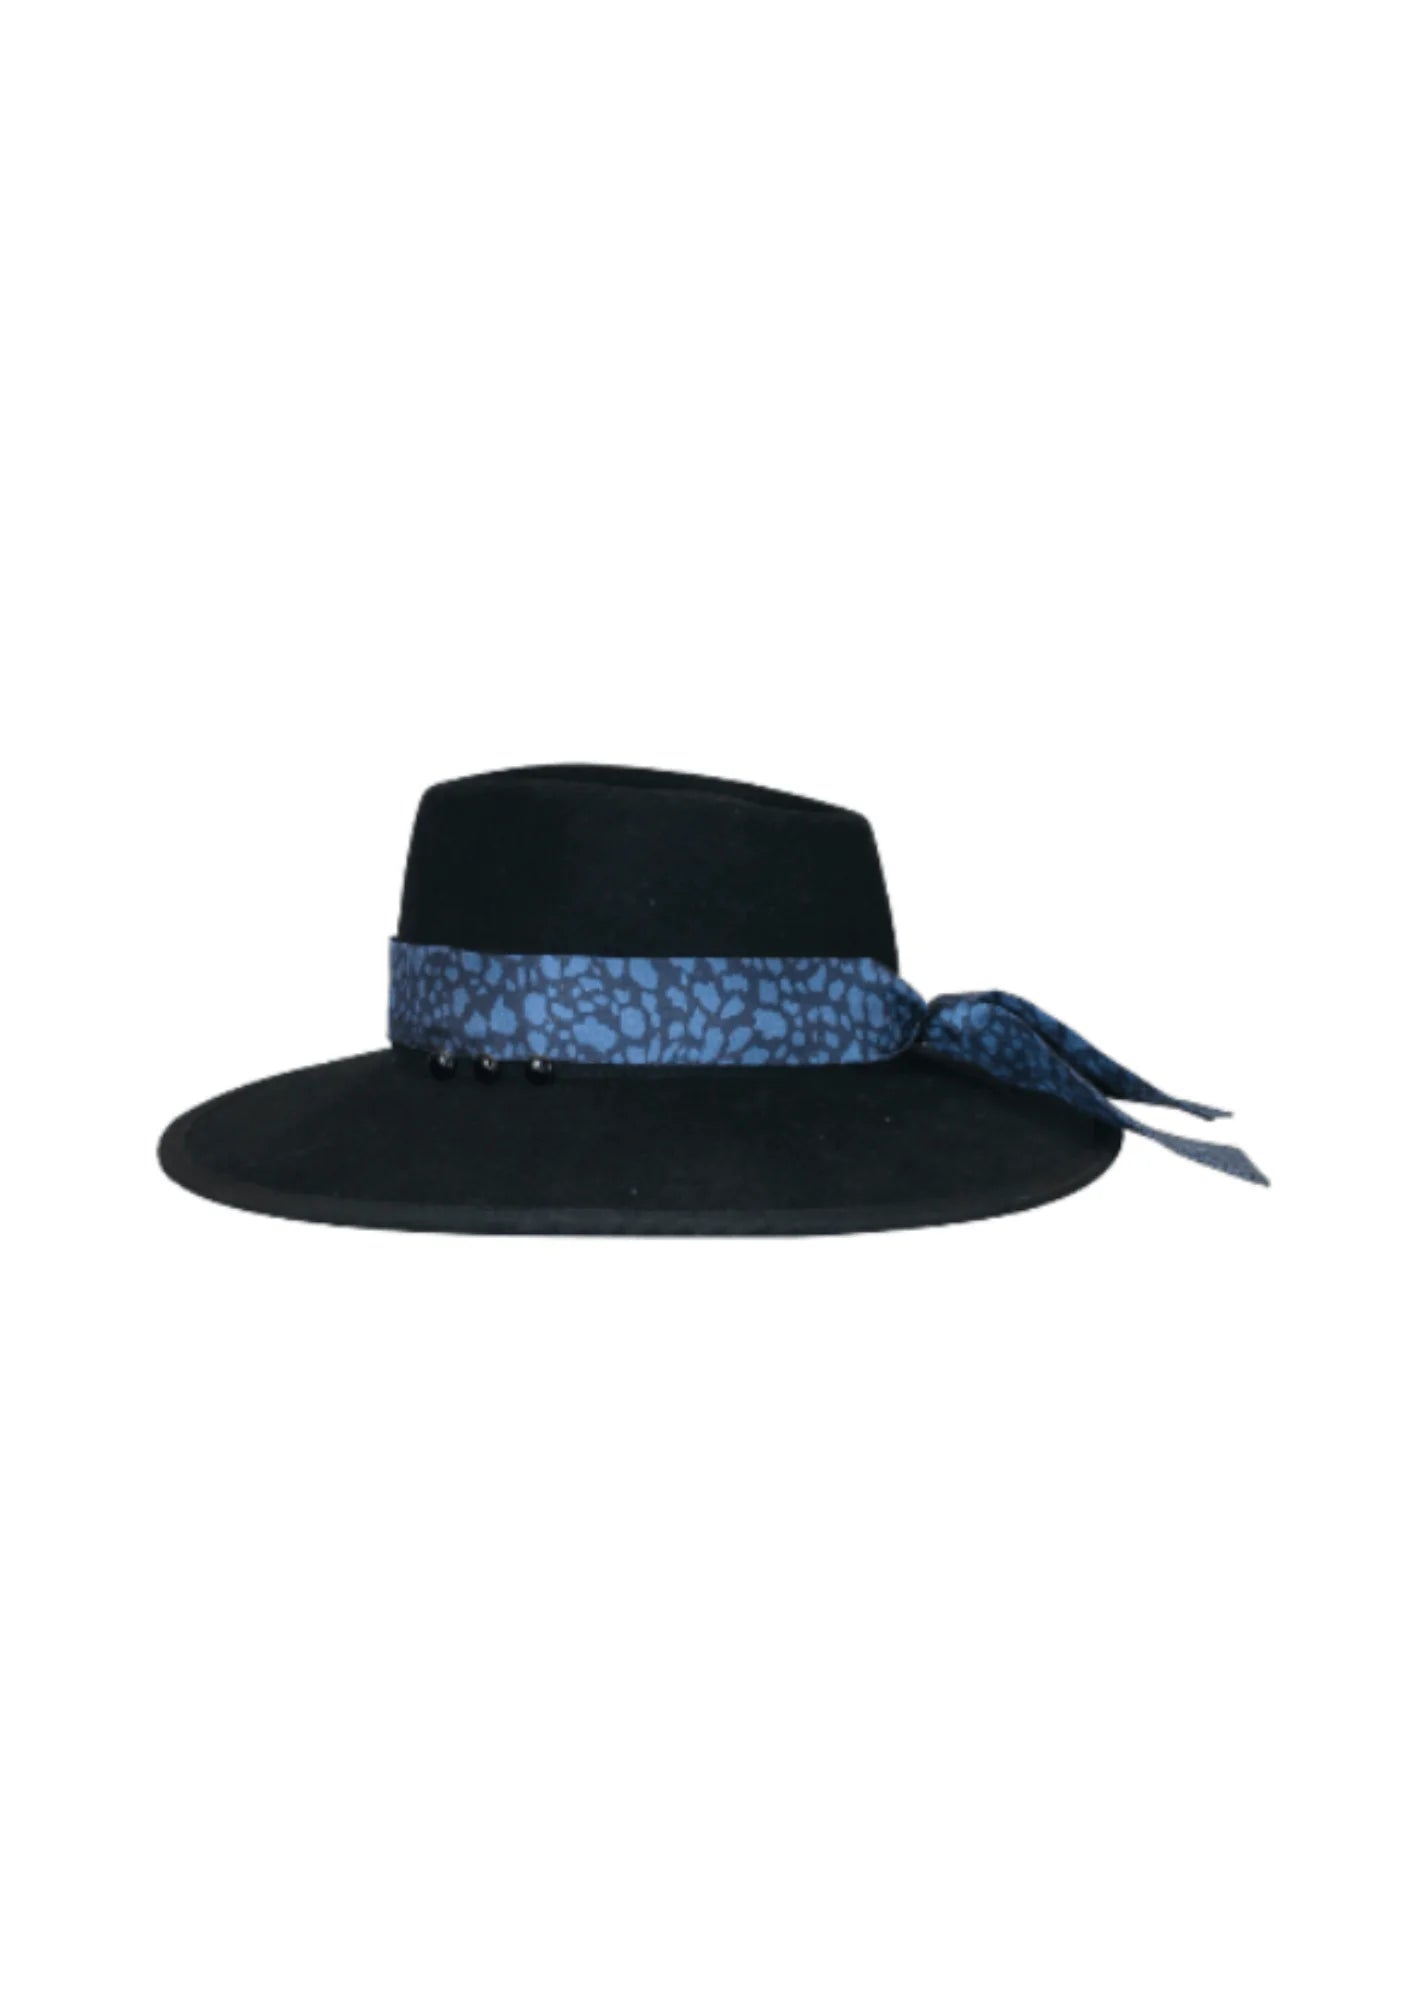 Schwarzer Hut mit austauschbarer Foulard